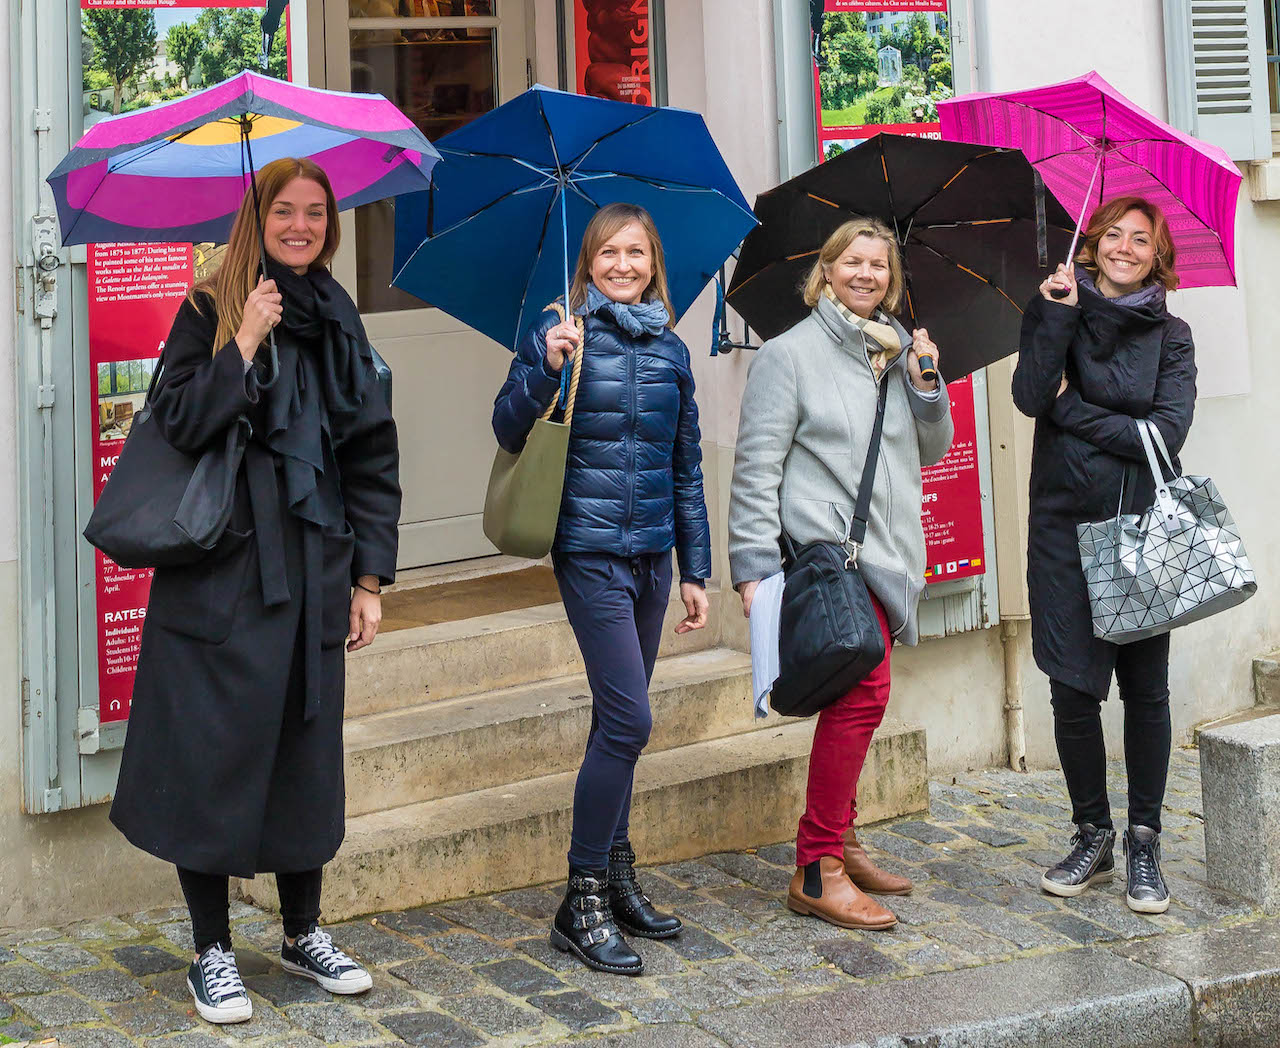 Balade Paris visite de Montmartre au printemps Apprentissage Apprenant Français France Culture 